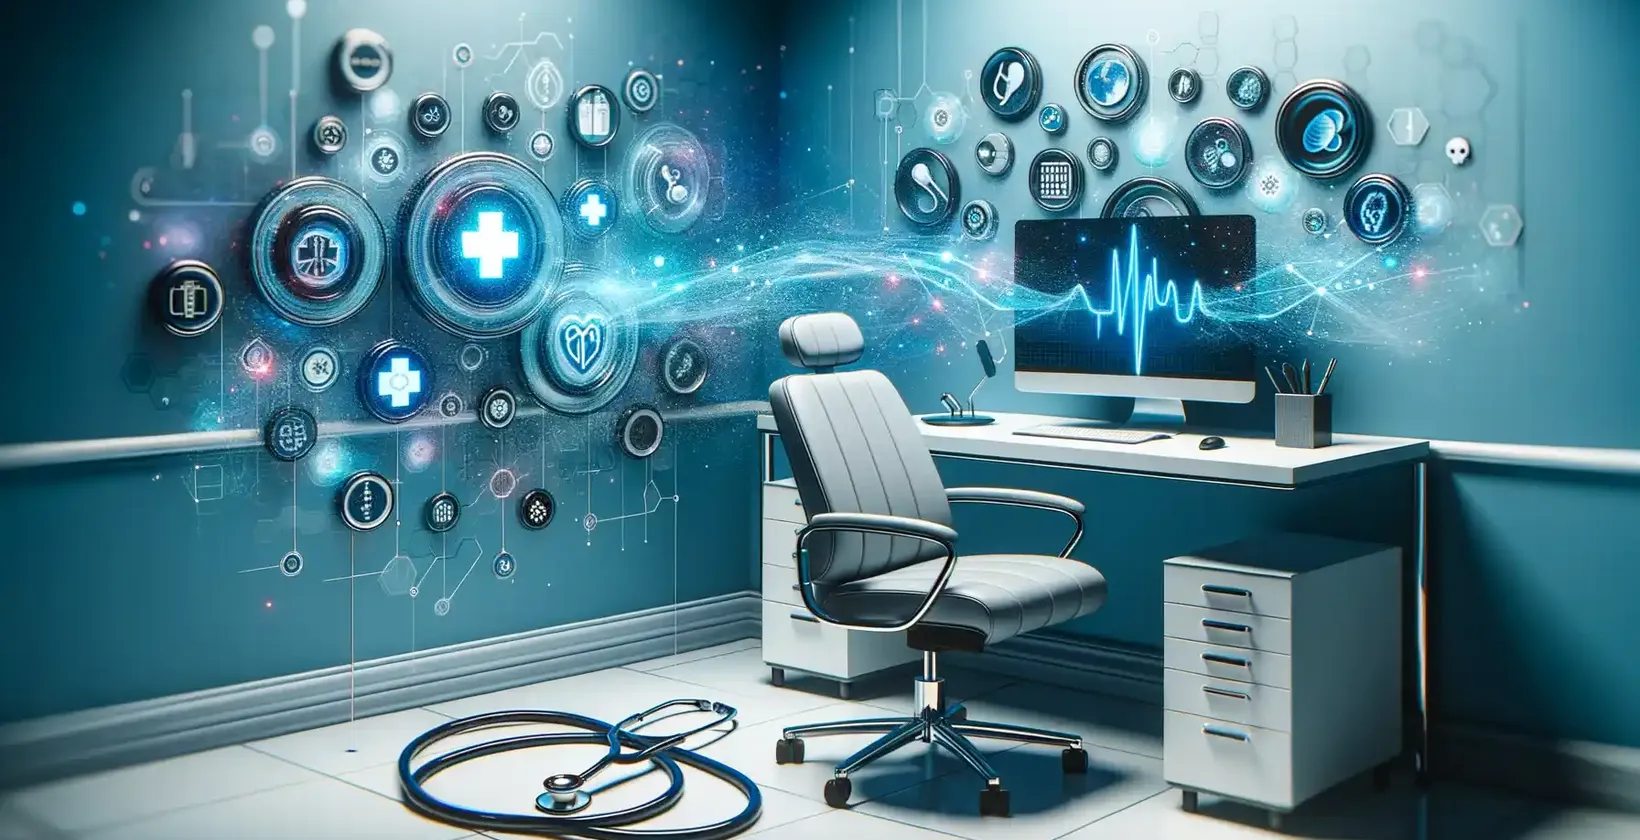 Aplikacije za medicinsko prepisovanje v sodobni pisarni z digitalnimi zdravstvenimi simboli in holografskimi poudarki